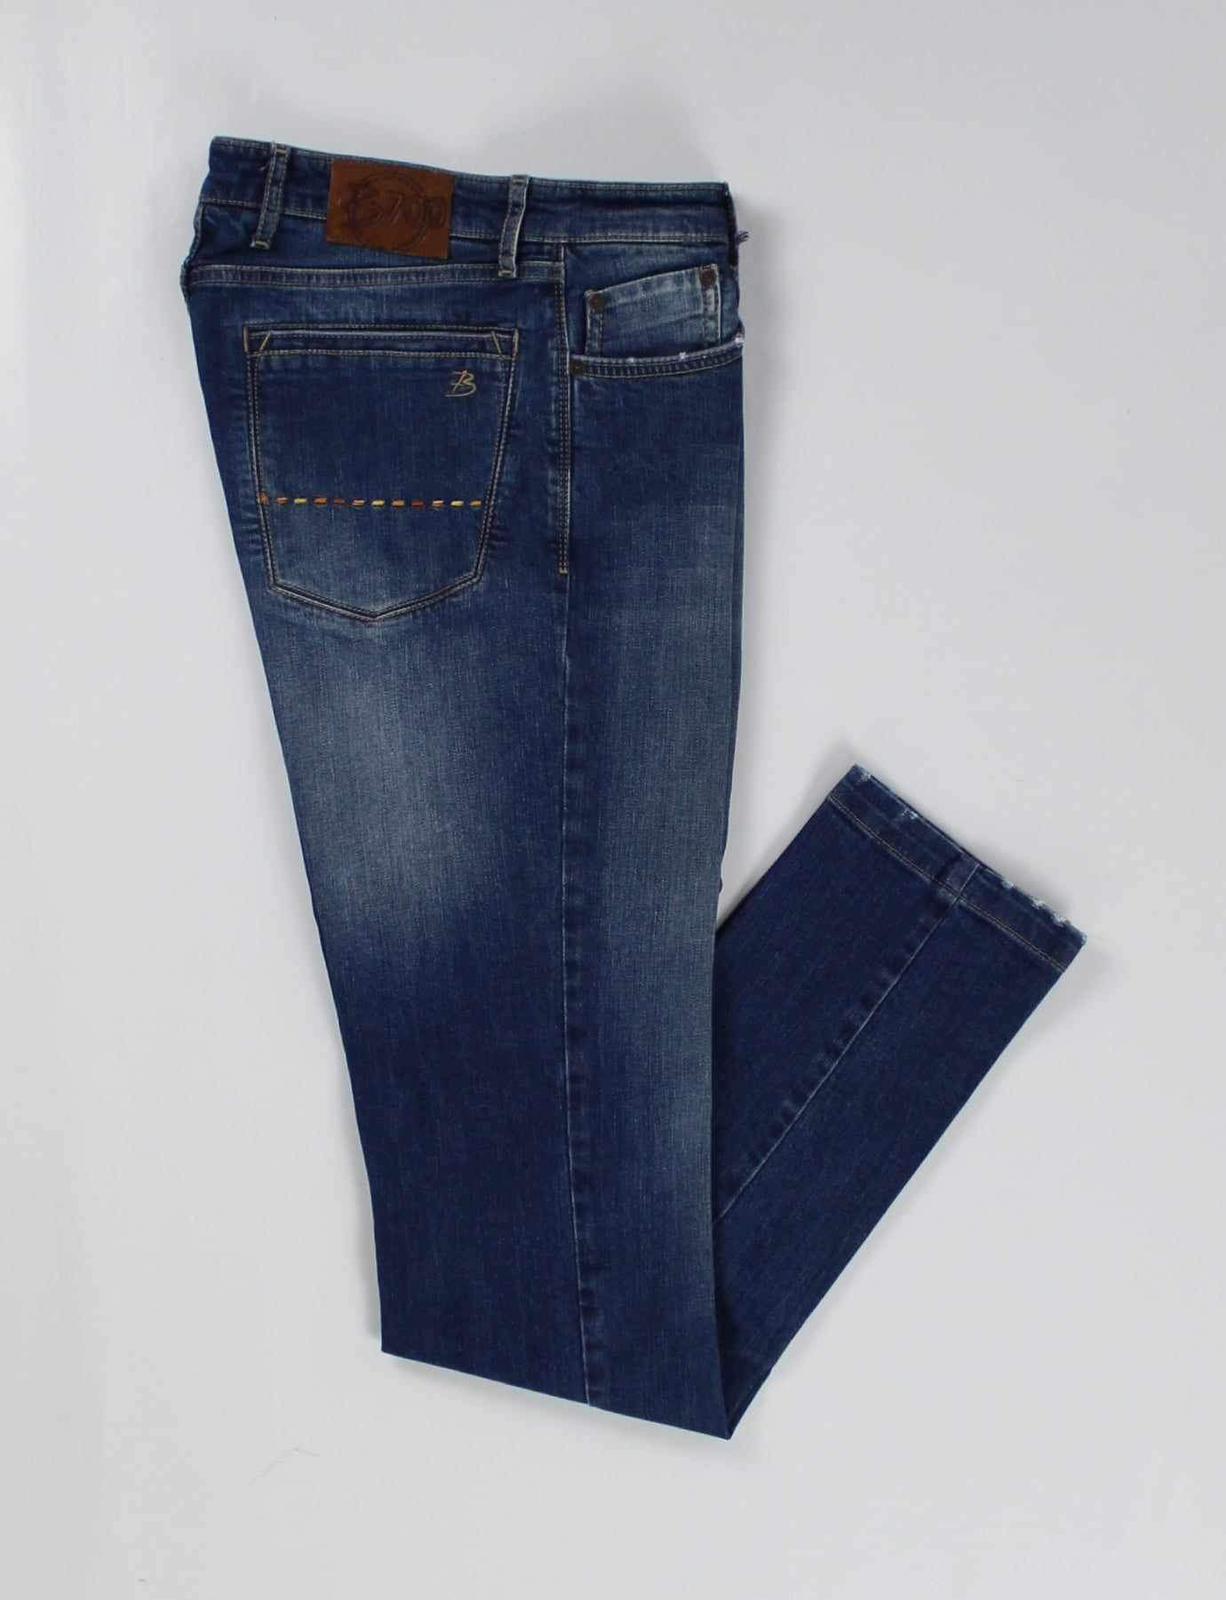 Jeans Uomo B700-mod. C705-5164